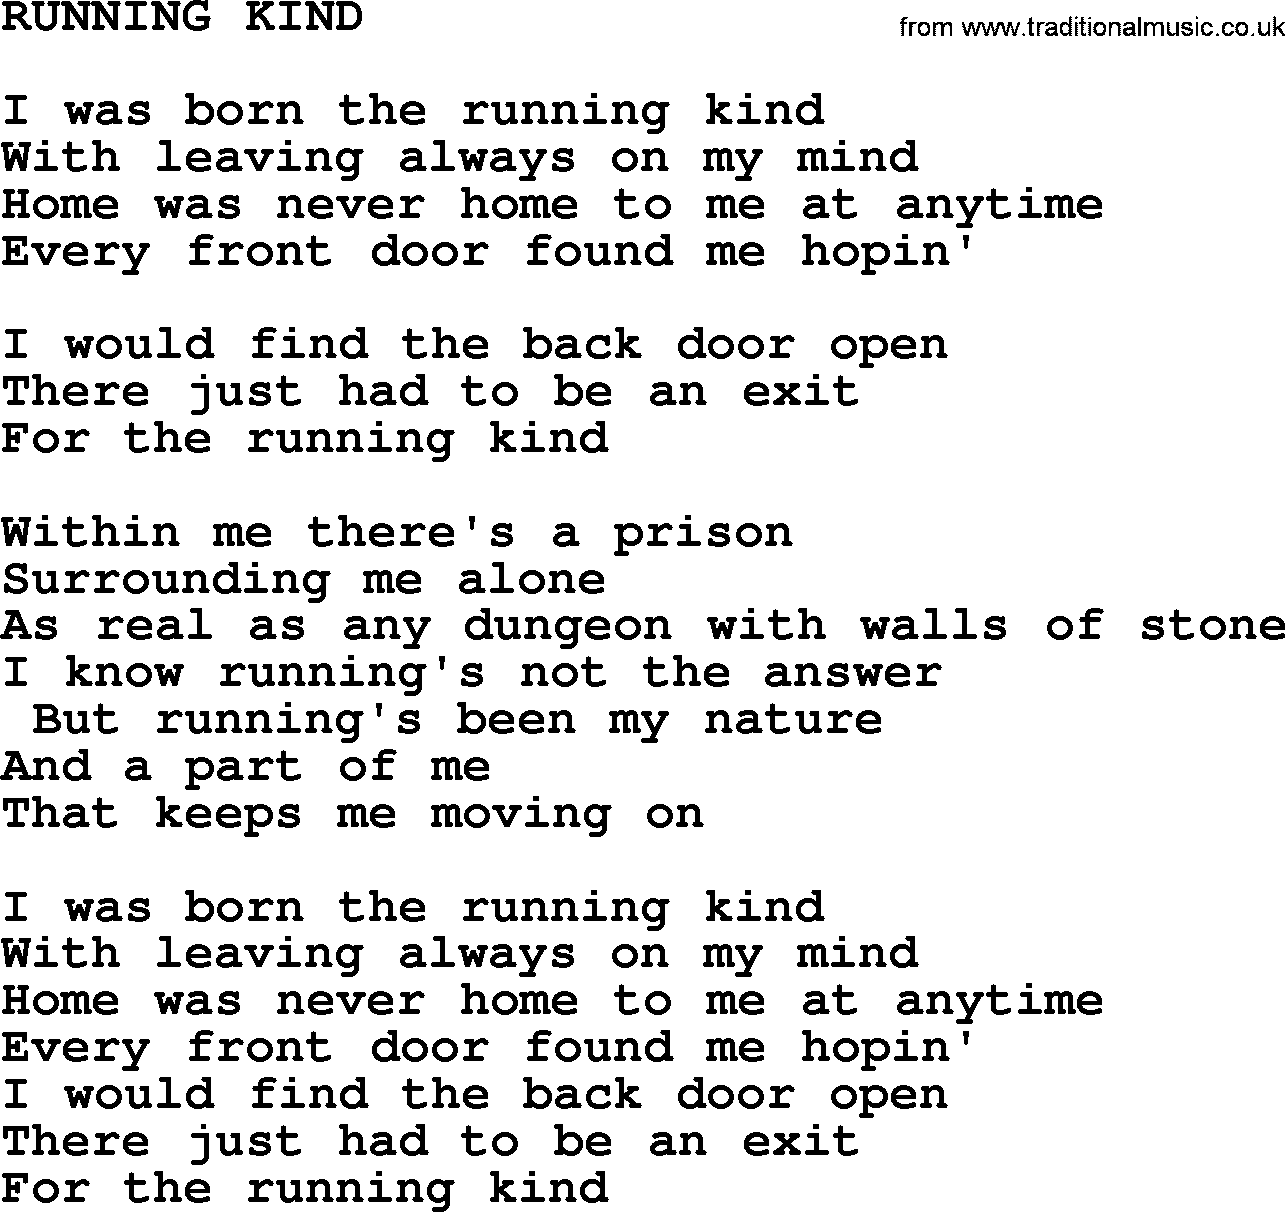 Merle Haggard song: Running Kind, lyrics.